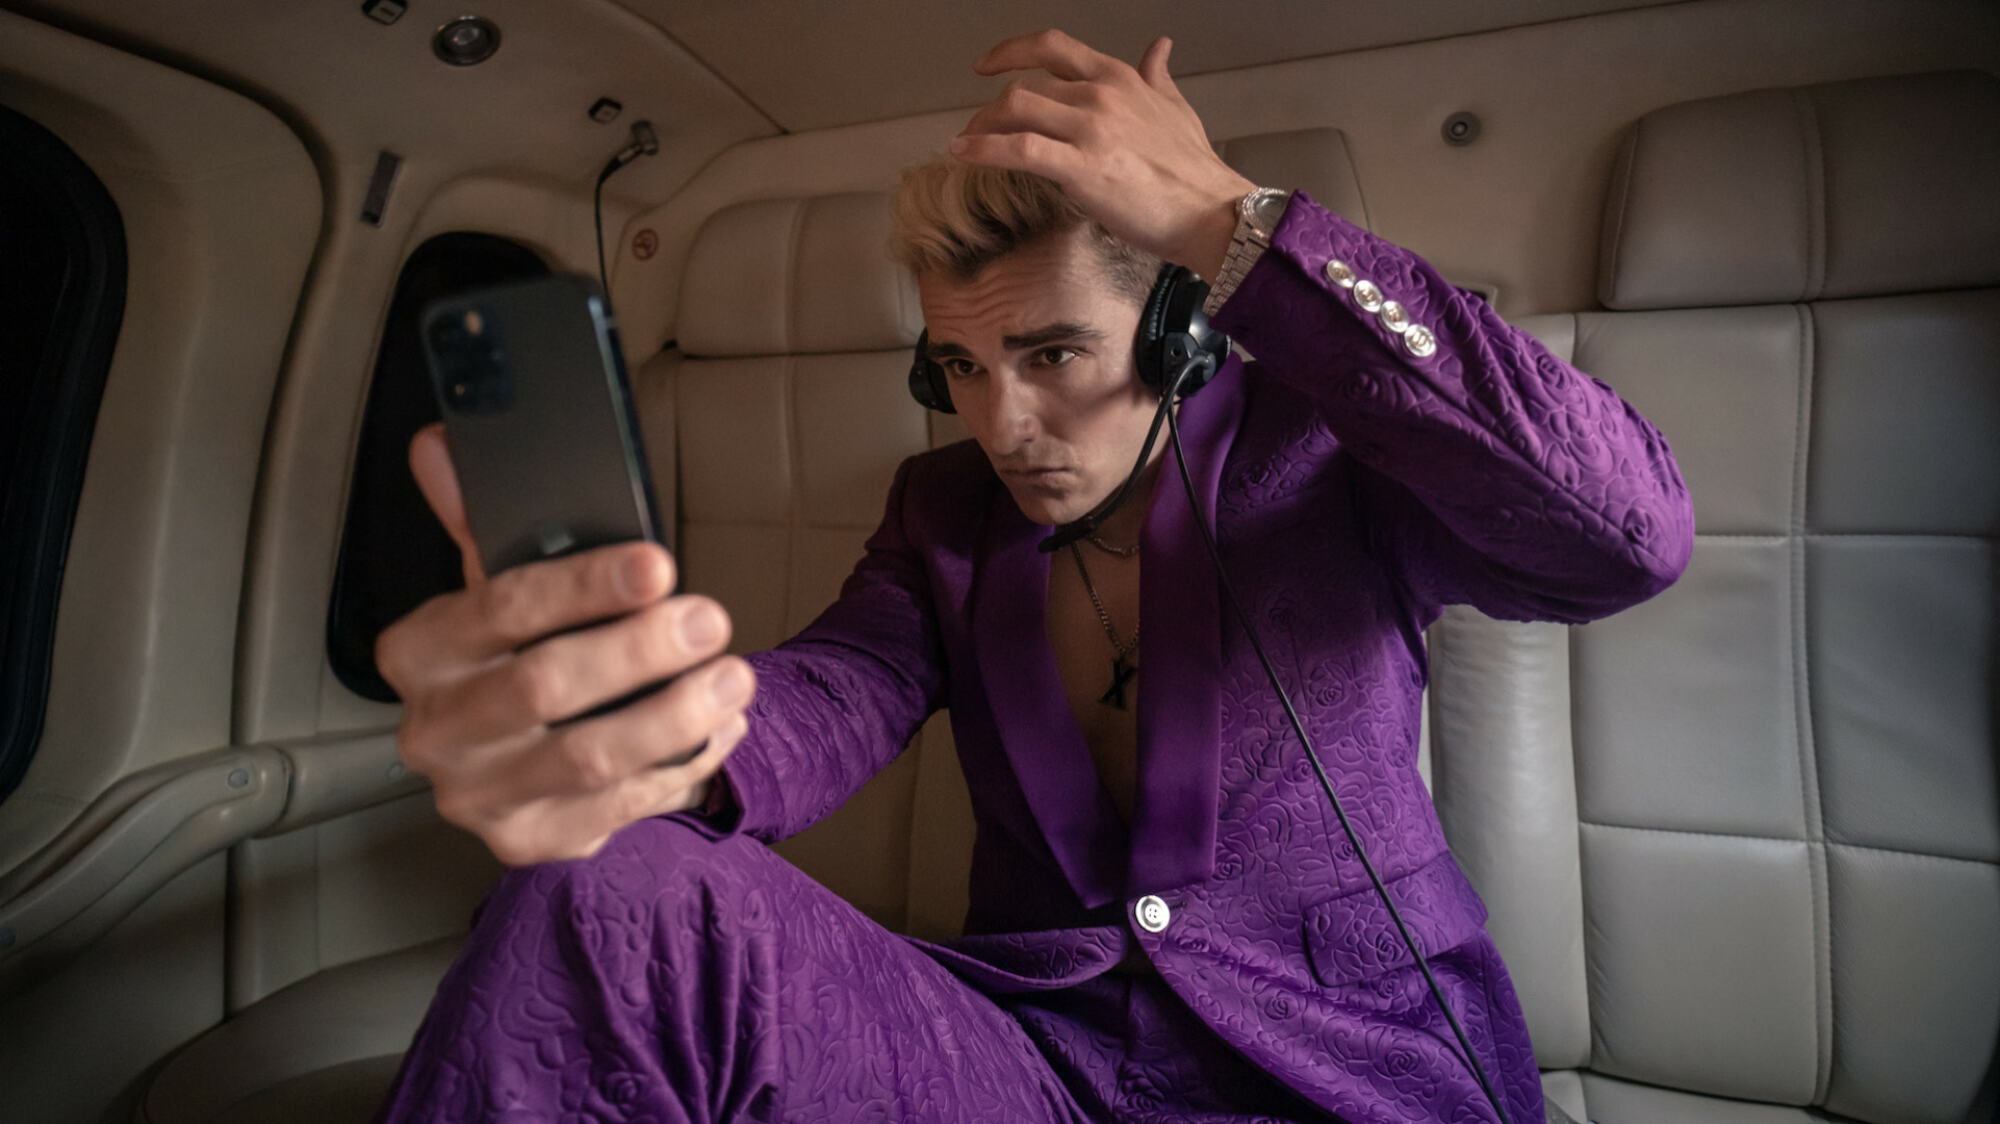 Un homme en costume violet avec des cheveux blonds décolorés se vérifie dans son téléphone;  un alambic de 